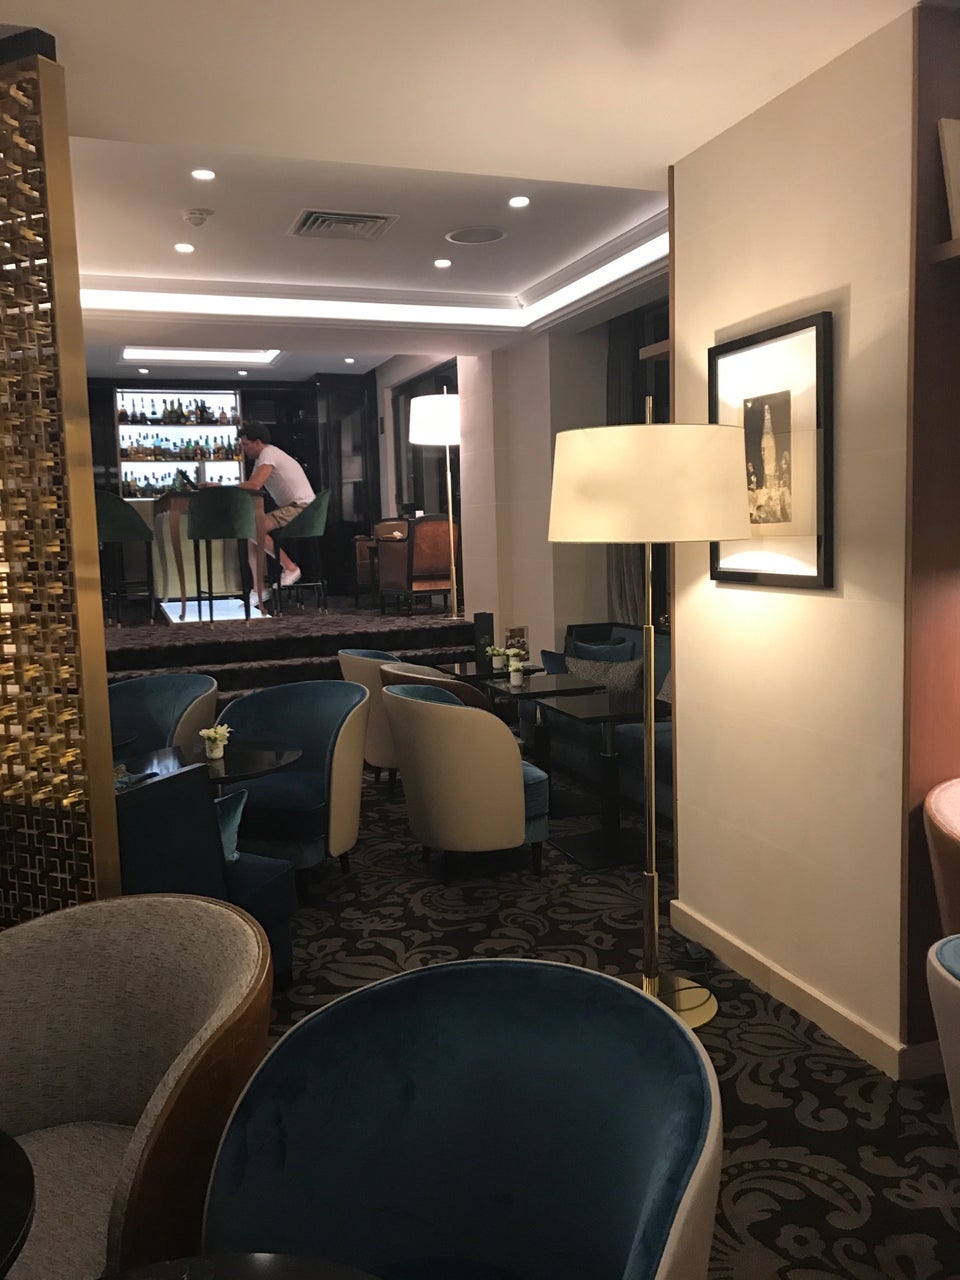 Photo of Hotel Baltimore Paris